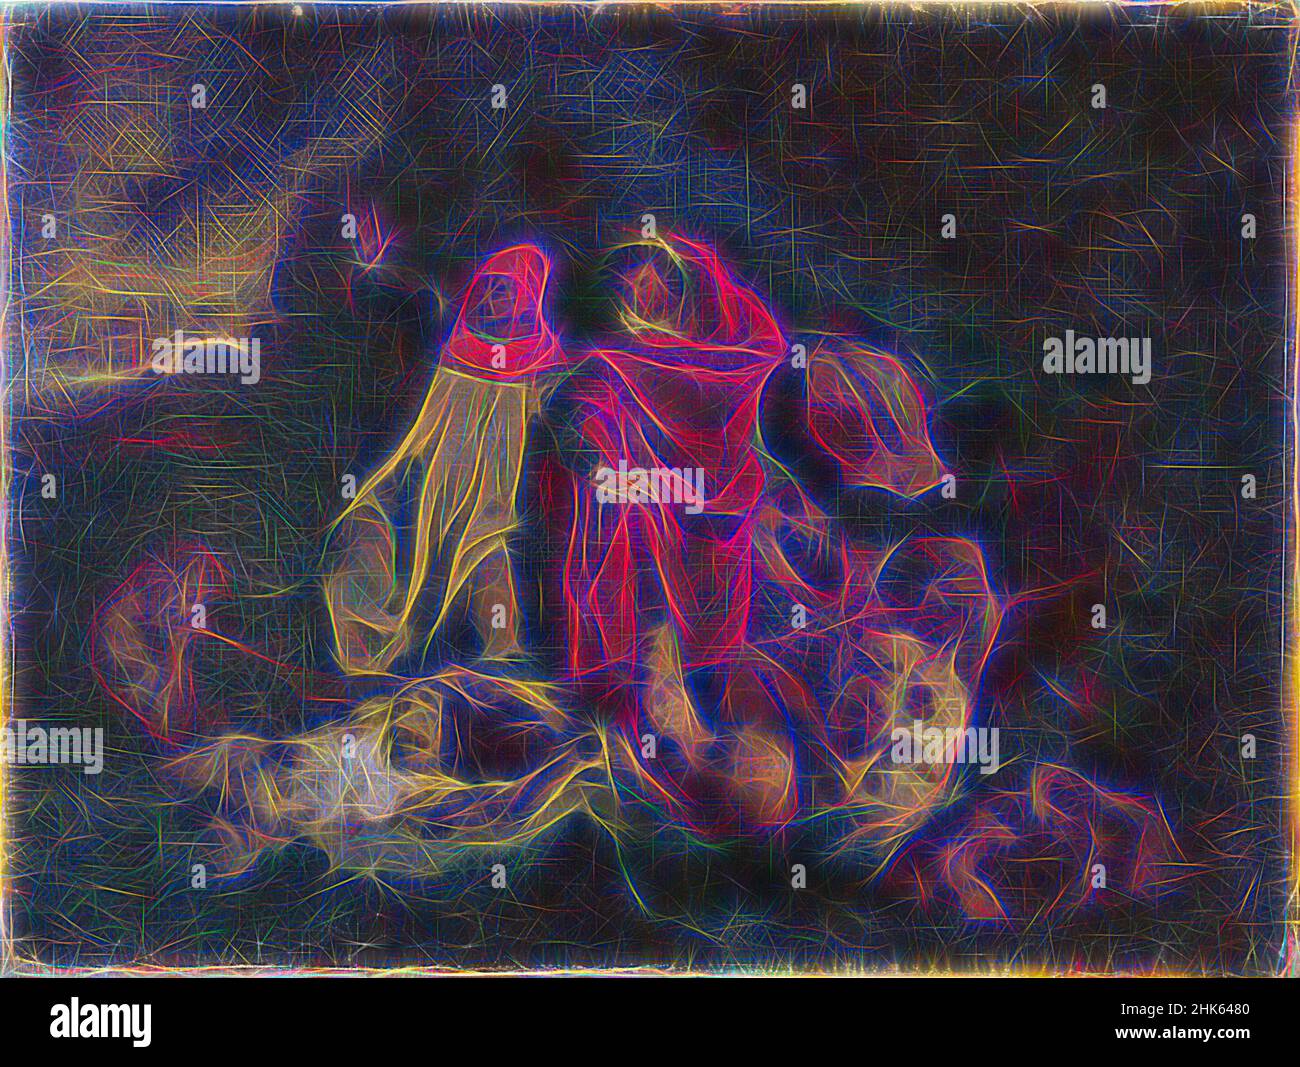 Inspiriert von der Barke von Dante, Eugène Delacroix, französisch, 1798–1863, Unbekannt, 19th Jahrhundert, Öl auf Leinwand, Gemälde, 9 11/16 x 12 7/8 Zoll (24,6 x 32,7 cm, neu erfunden von Artotop. Klassische Kunst neu erfunden mit einem modernen Twist. Design von warmen fröhlichen Leuchten der Helligkeit und Lichtstrahl Strahlkraft. Fotografie inspiriert von Surrealismus und Futurismus, umarmt dynamische Energie der modernen Technologie, Bewegung, Geschwindigkeit und Kultur zu revolutionieren Stockfoto